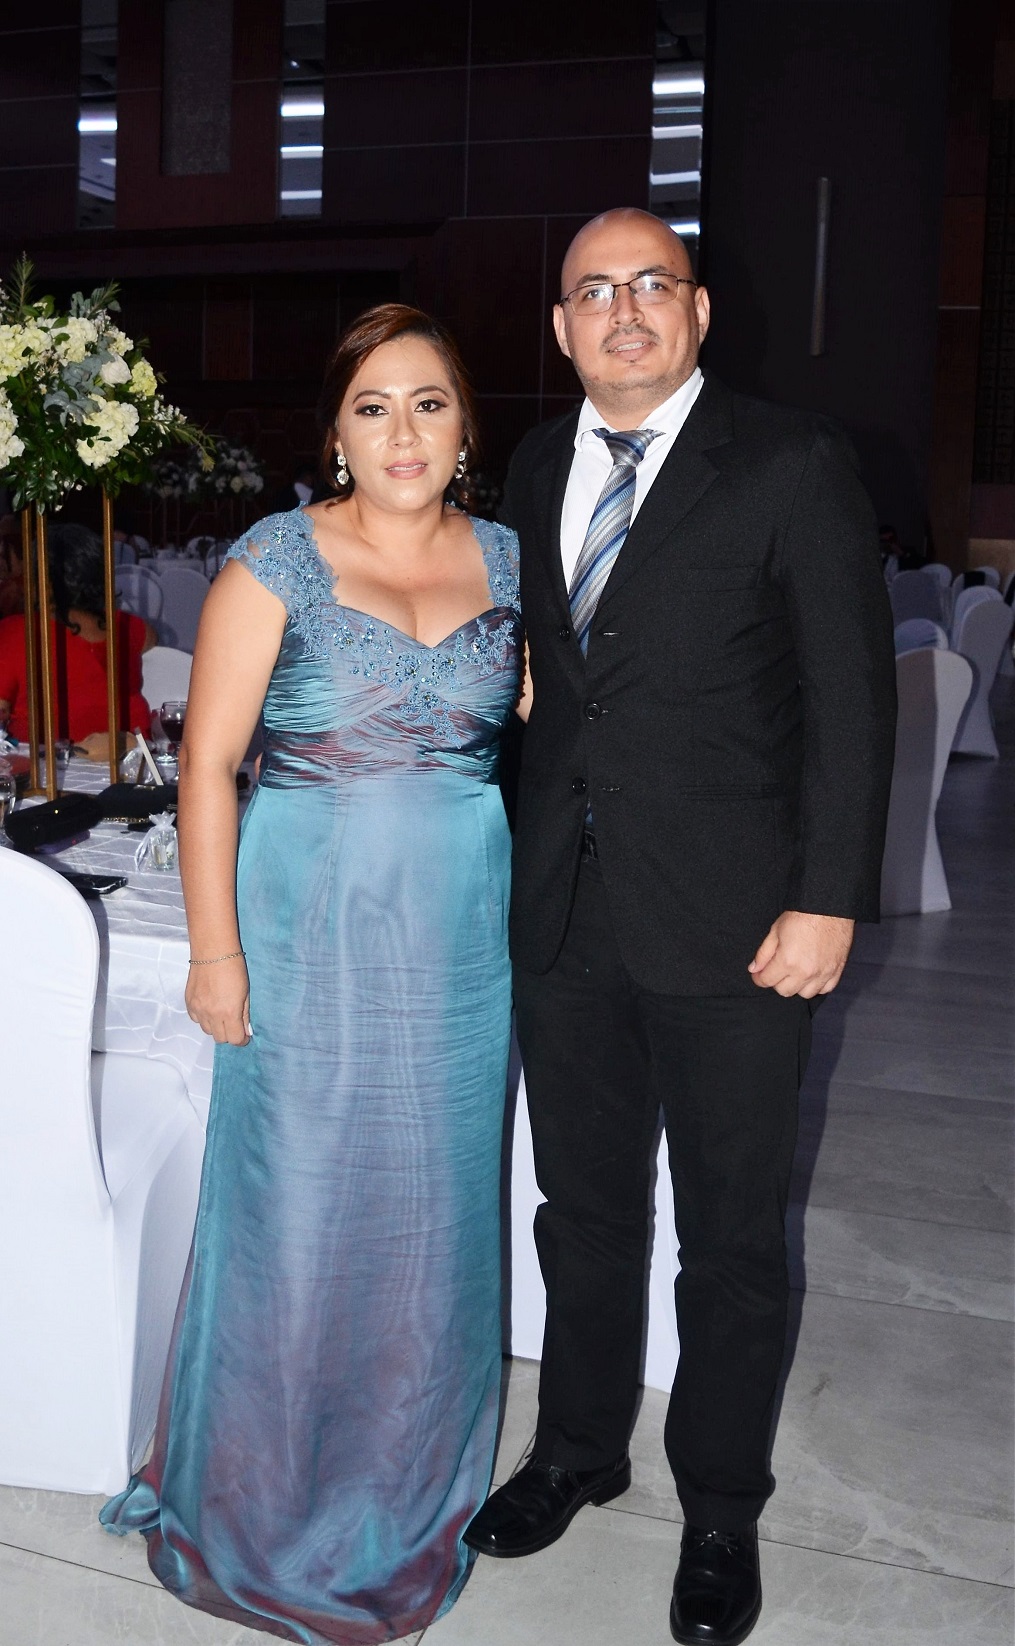 La boda de Medardo Méndez y Rocío Sierra…absoluto romanticismo 